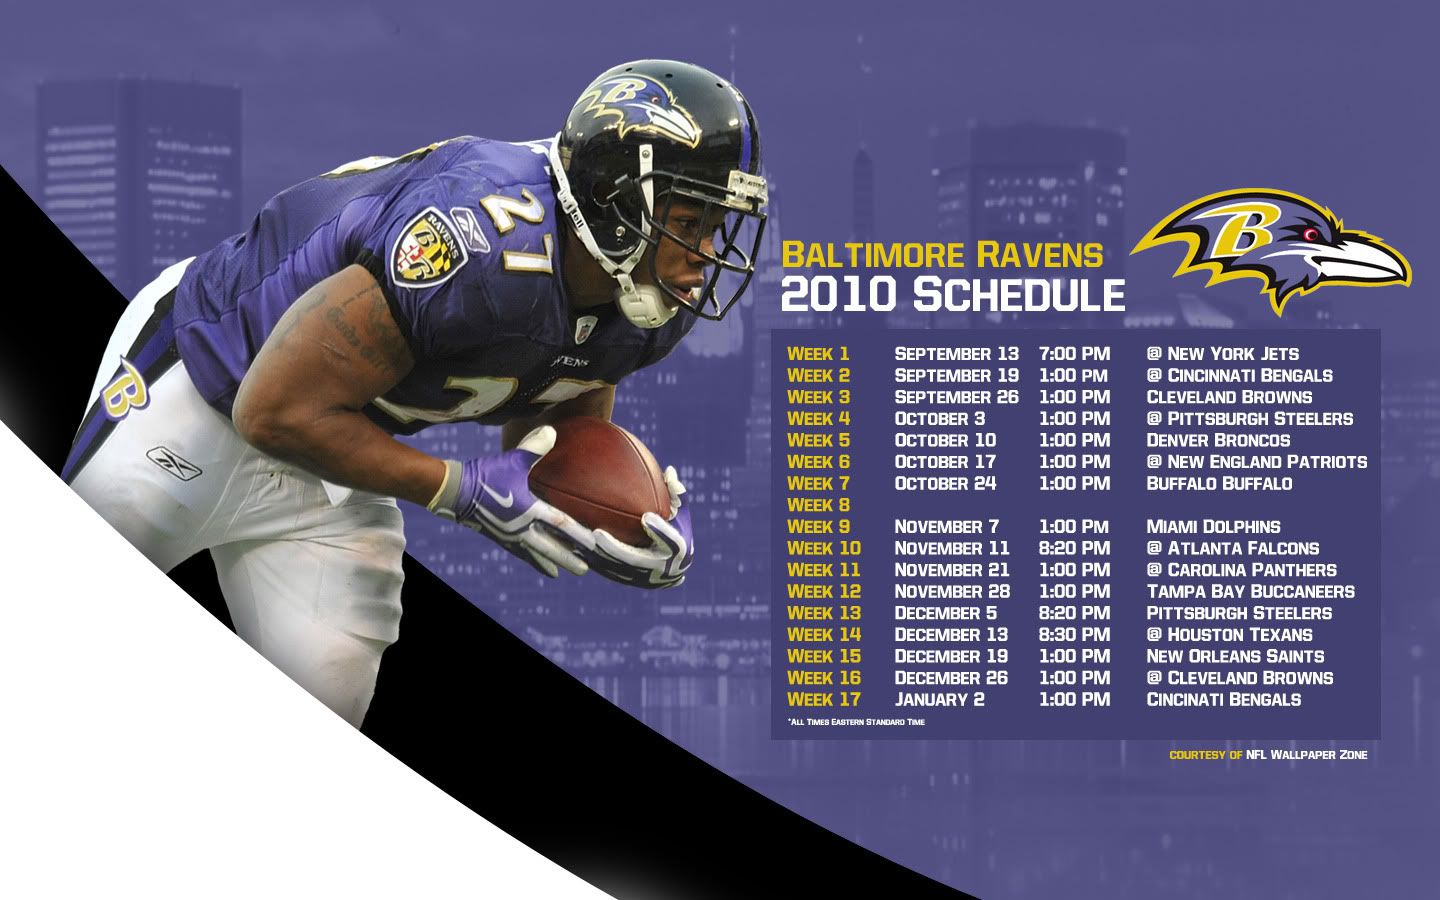 Ravens2010ScheduleWallpaper.jpg 2010 Baltimore Ravens Schedule Wallpaper